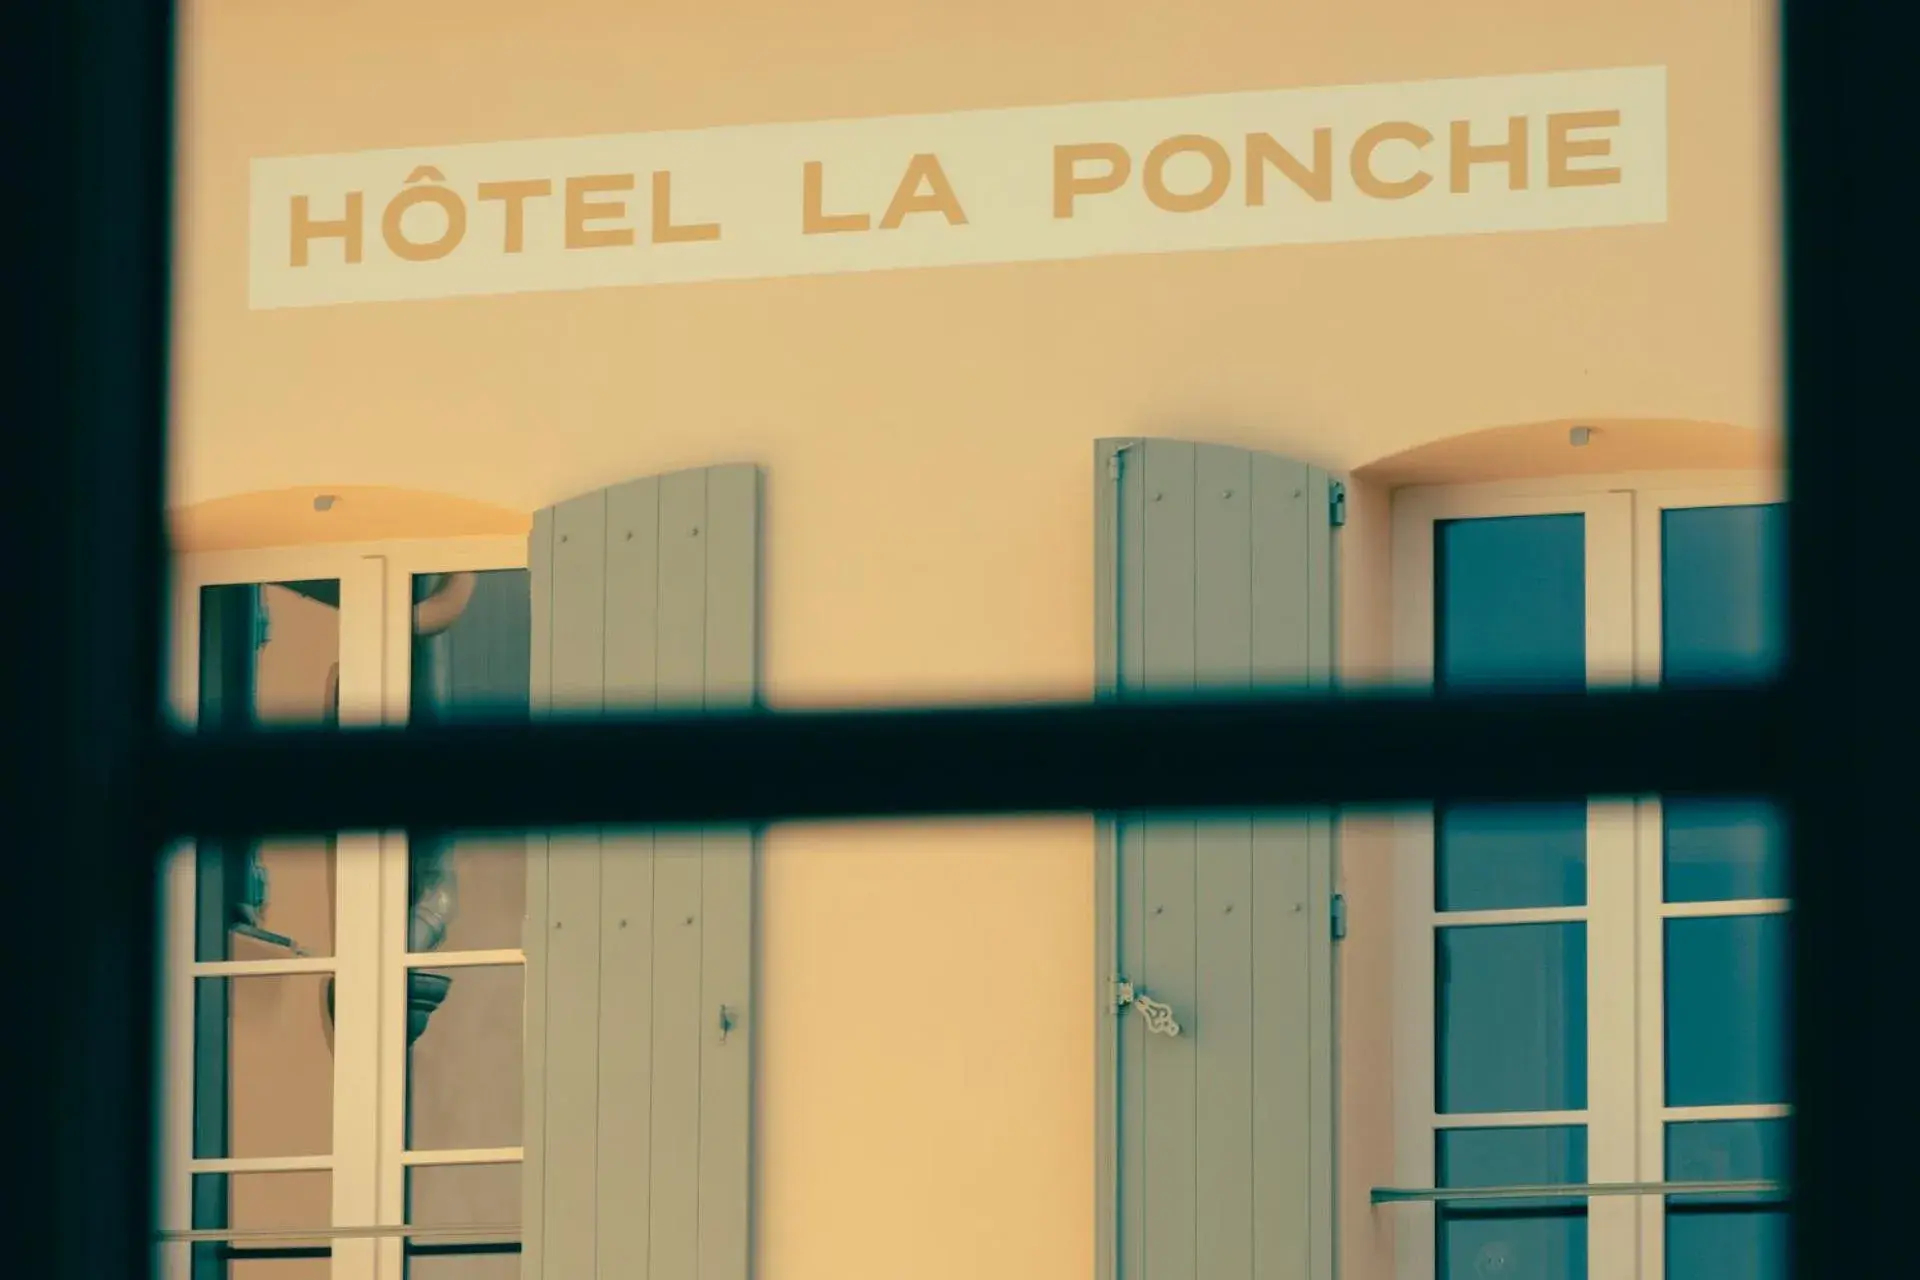 Property building in Hotel la Ponche